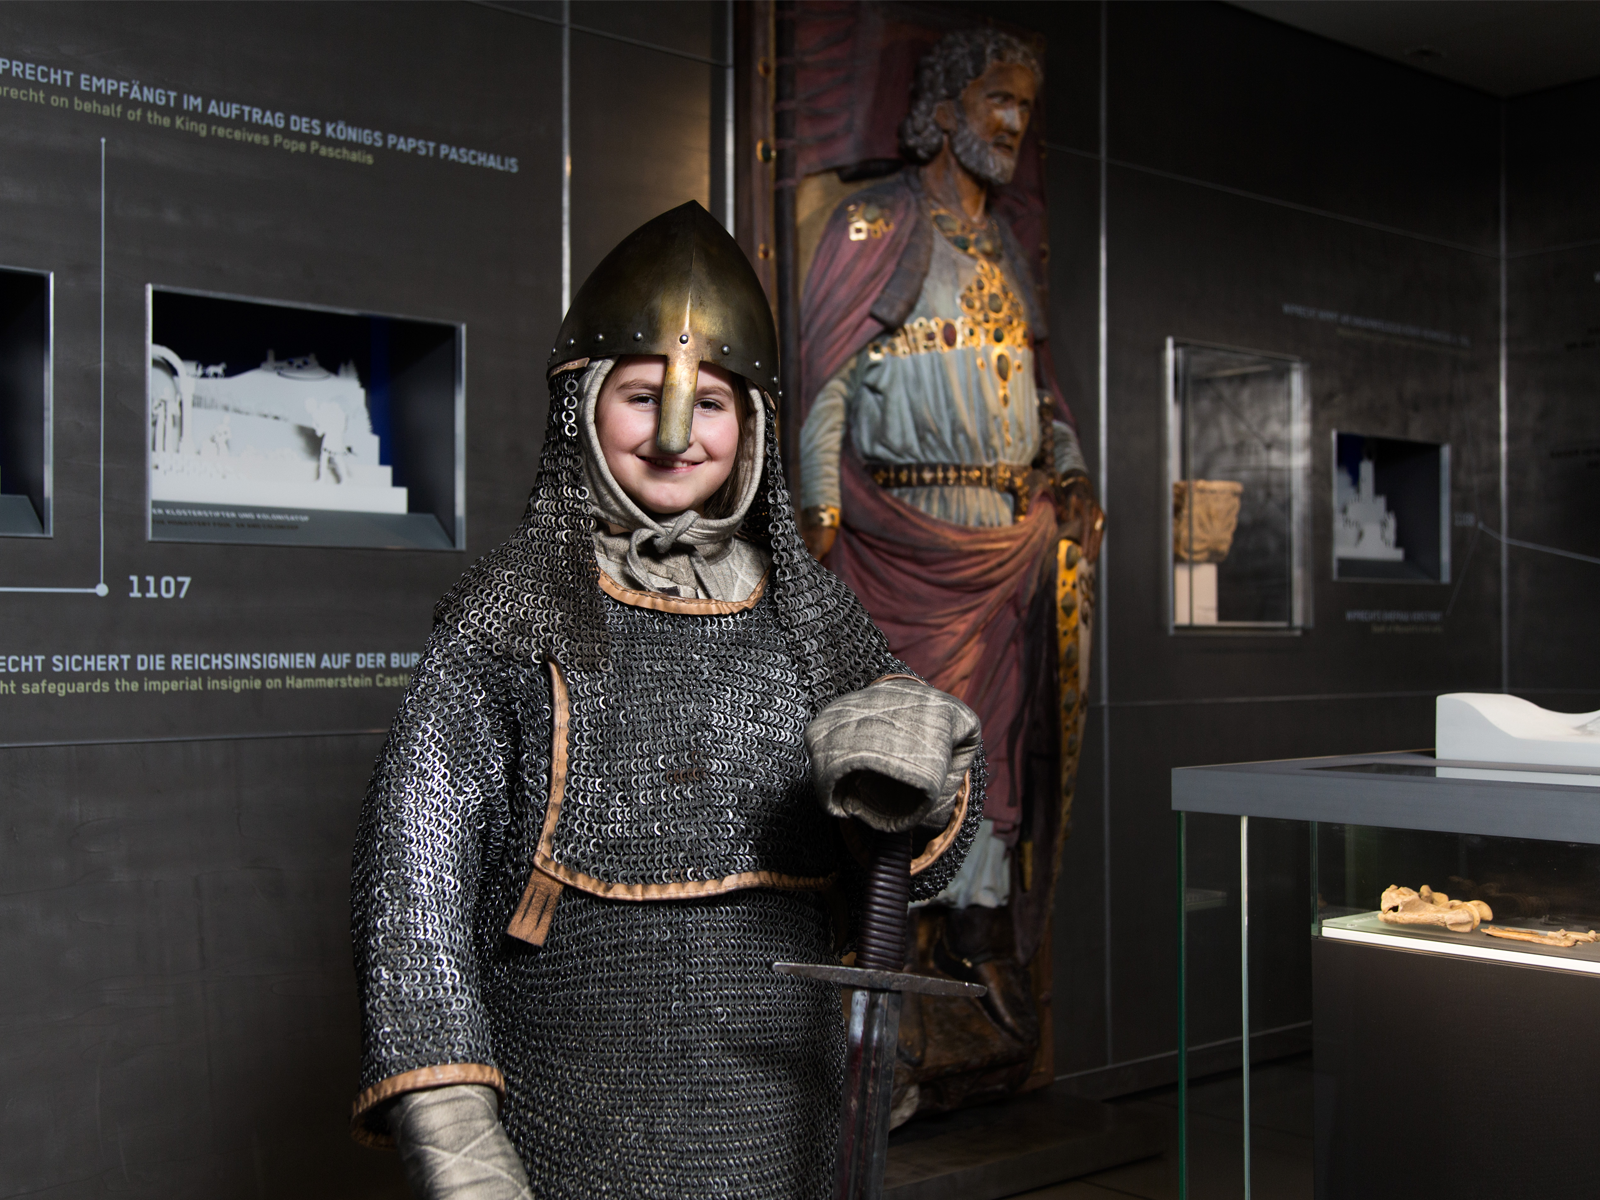 Auf dem Bild ist ein Kind in einer Ritterrüstung zu sehen. Im Huntergrund sind Exponate des Museums zu sehen.